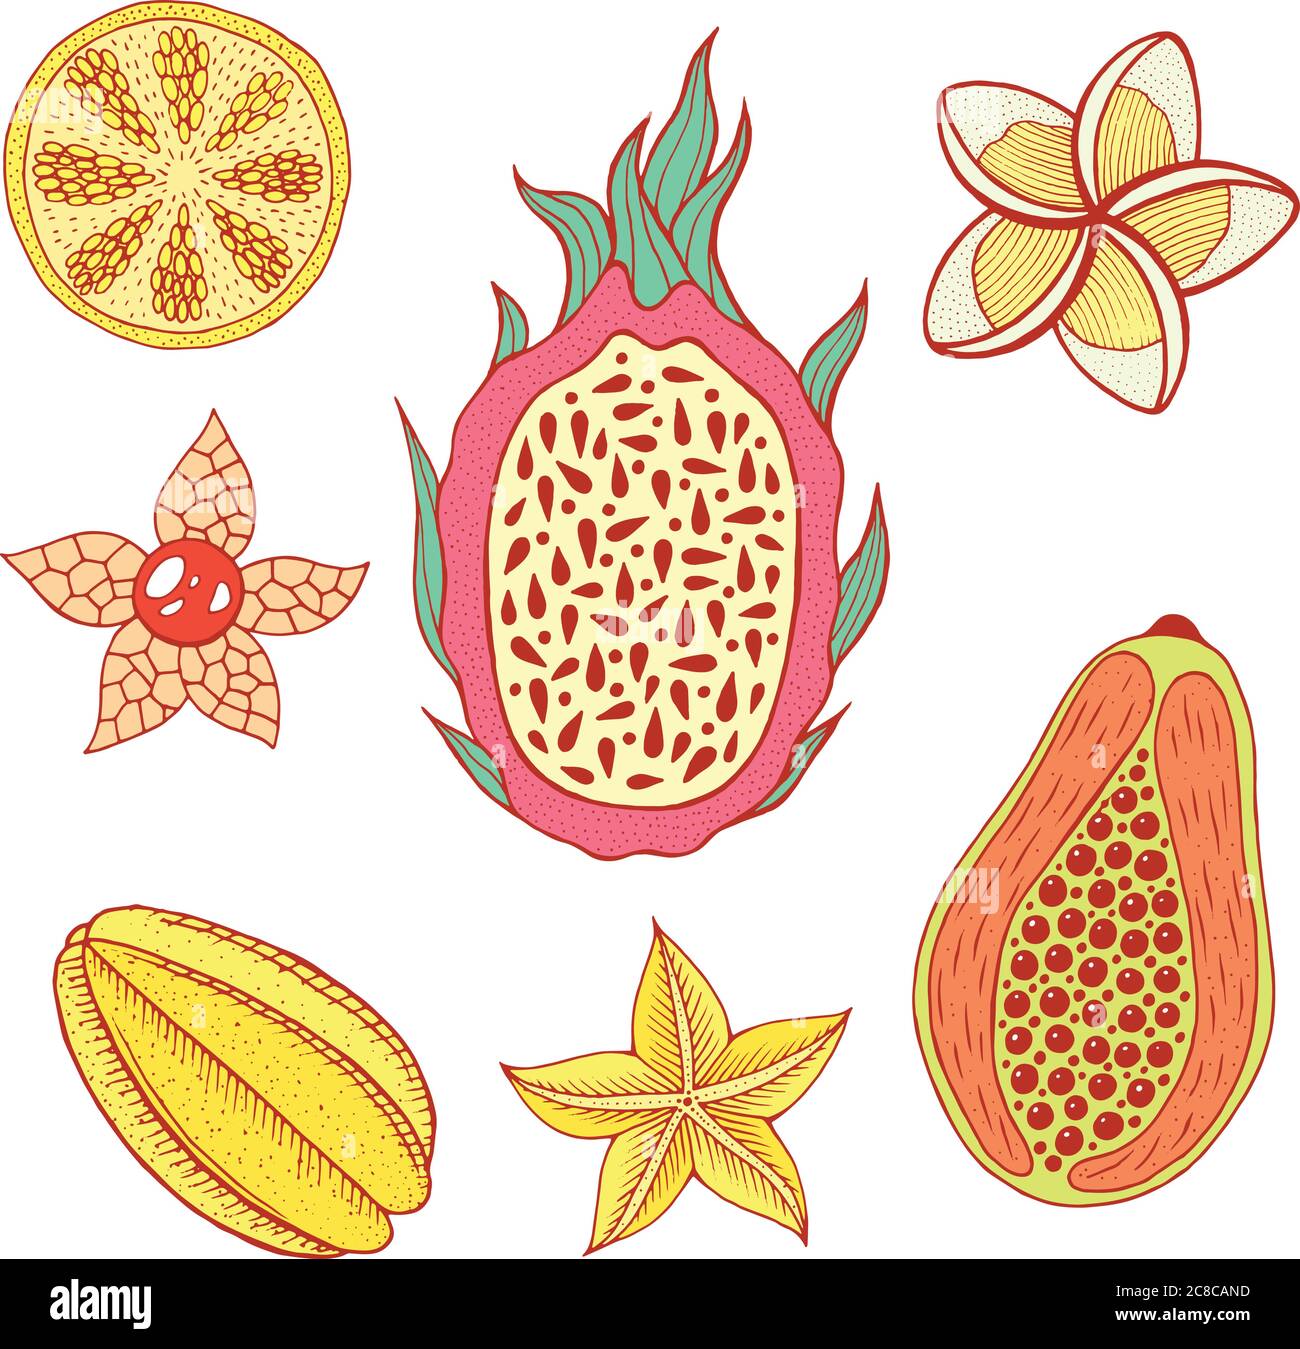 Tropische Frucht Stock Vektorgrafiken kaufen   Seite 20   Alamy